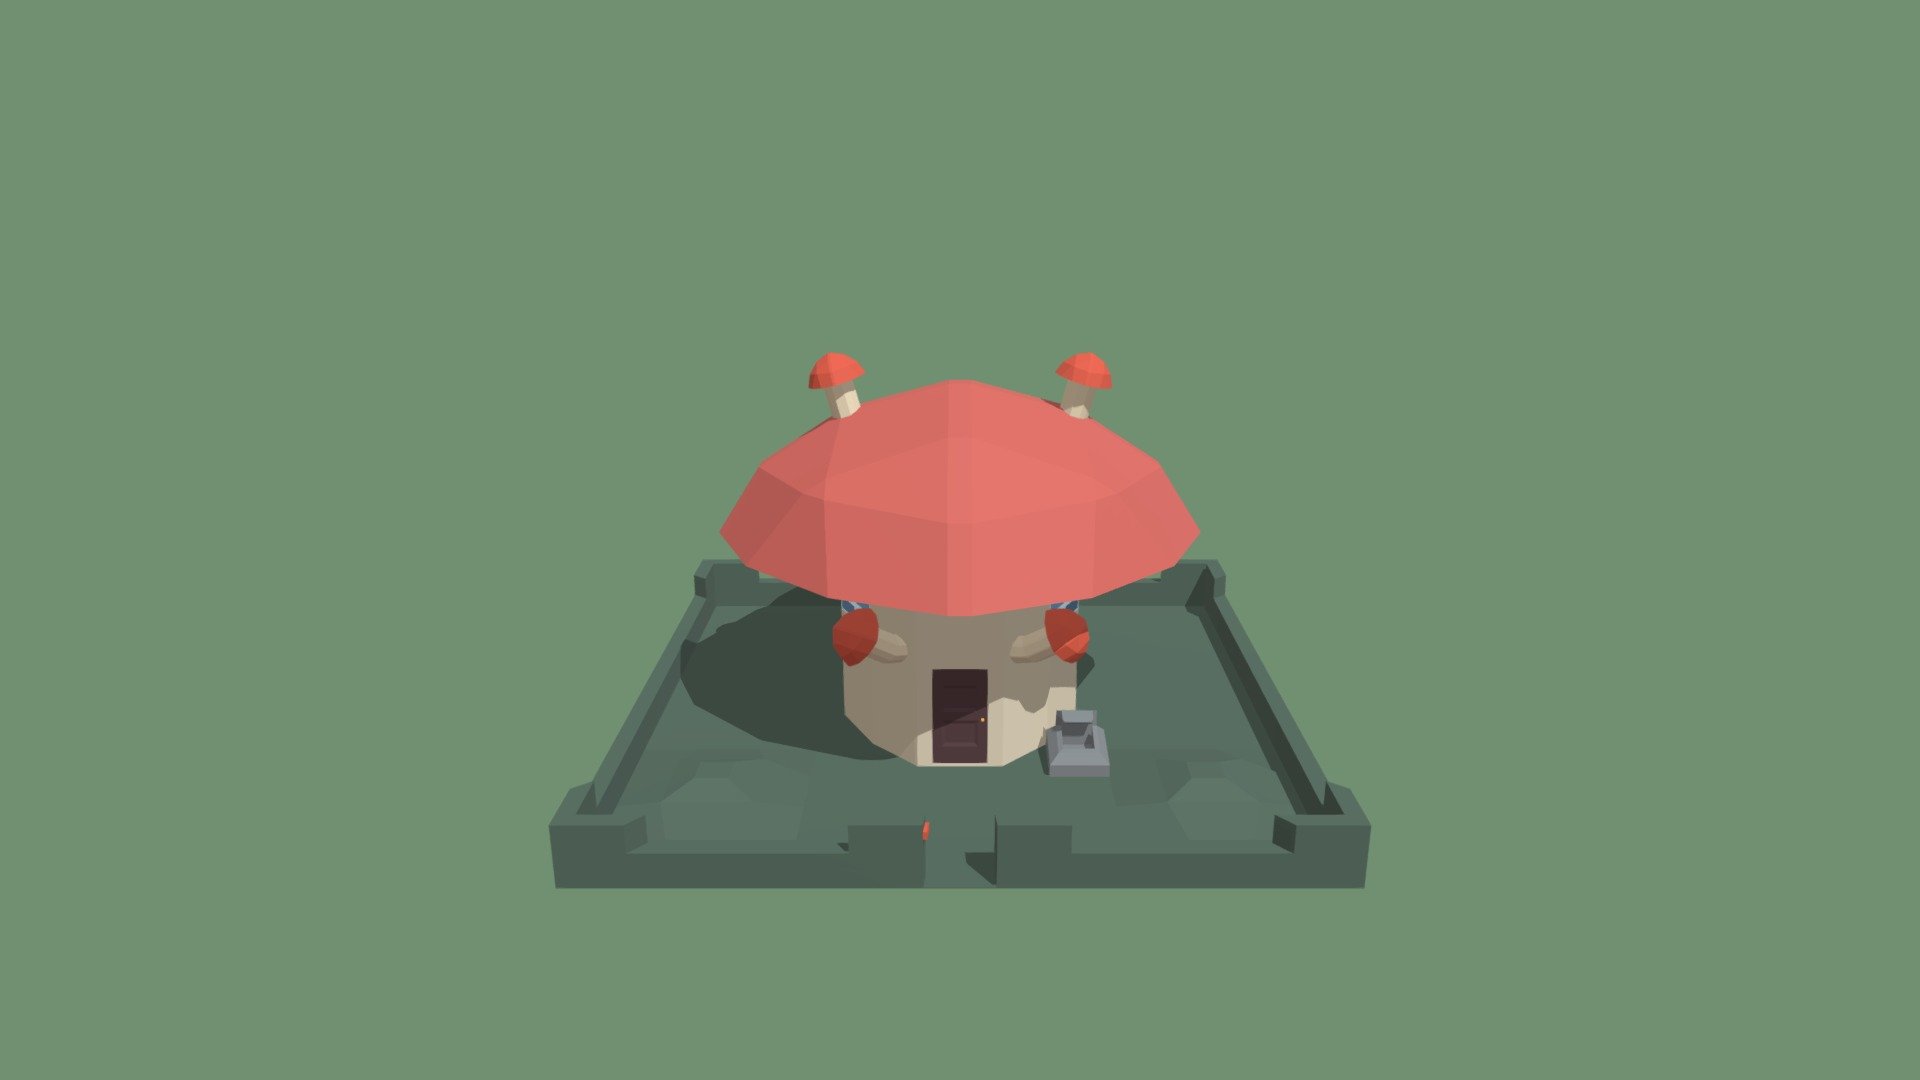 Mushroom House - 3D model by Pong.Tangprasertwut 3d model